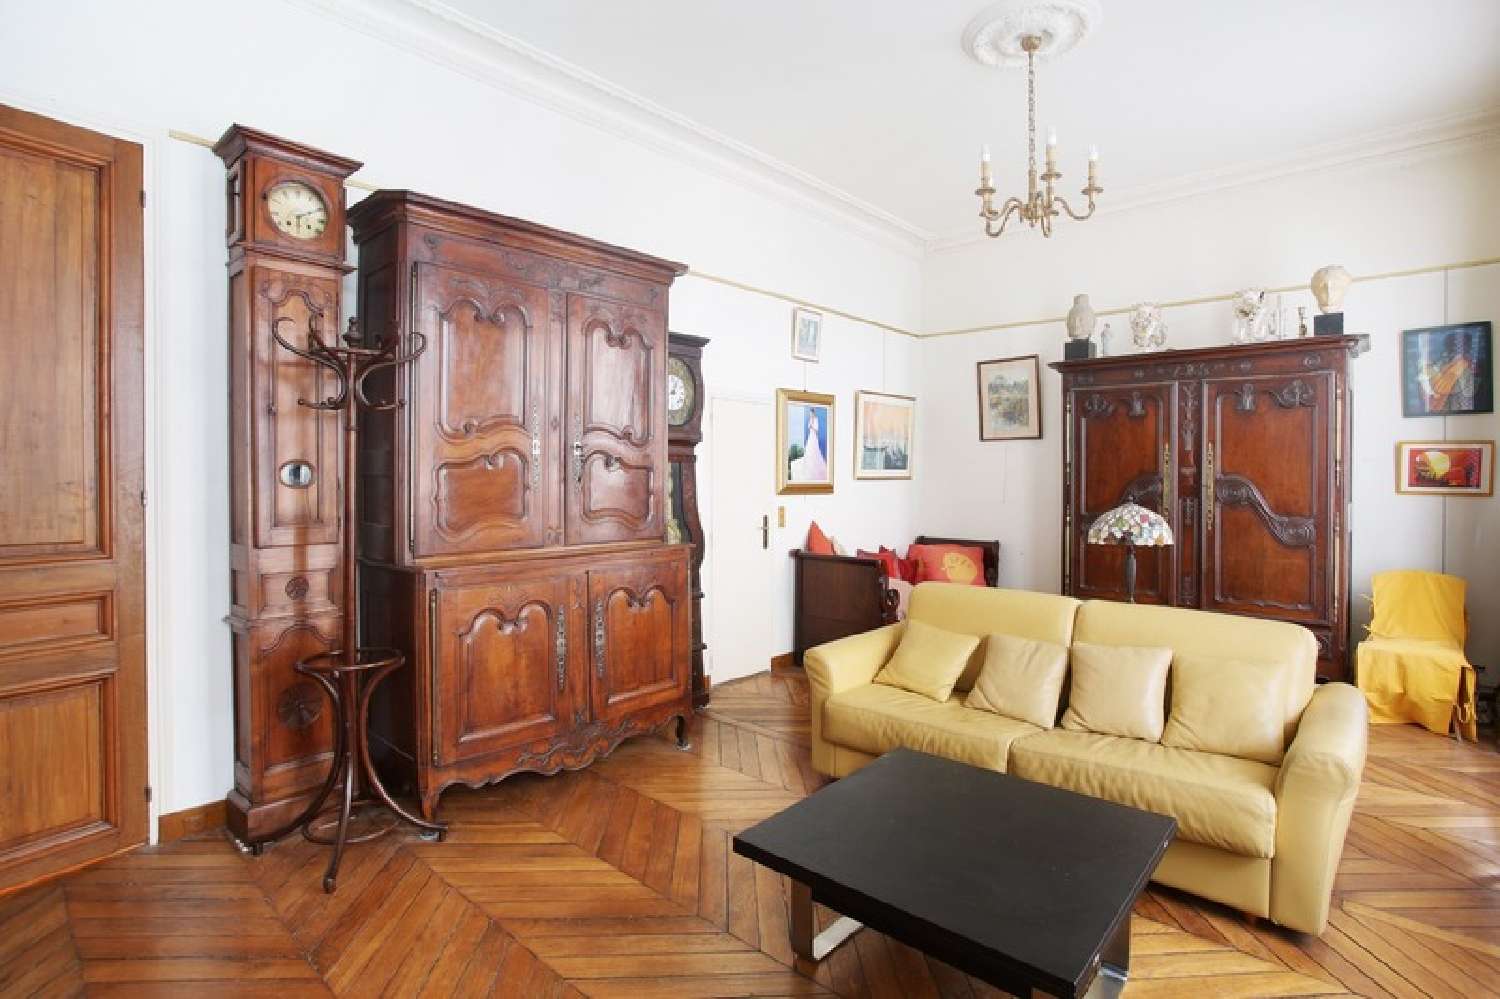  à vendre appartement Paris 16e Arrondissement Paris (Seine) 4